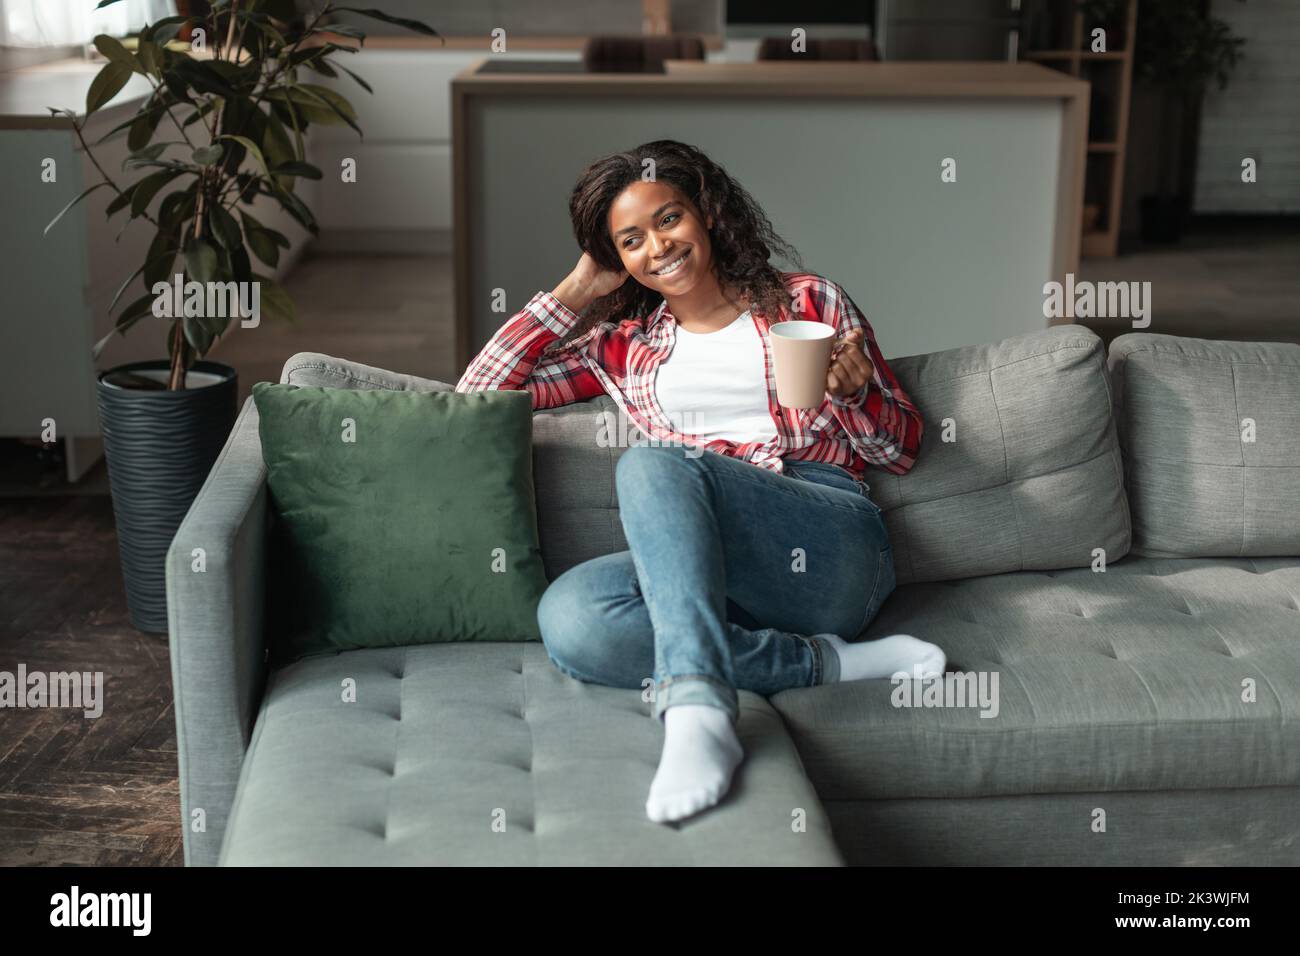 Allegra ragazza afro-americana millenaria con una tazza di bevanda preferita, goditi il tempo libero e il comfort, siediti sul divano Foto Stock